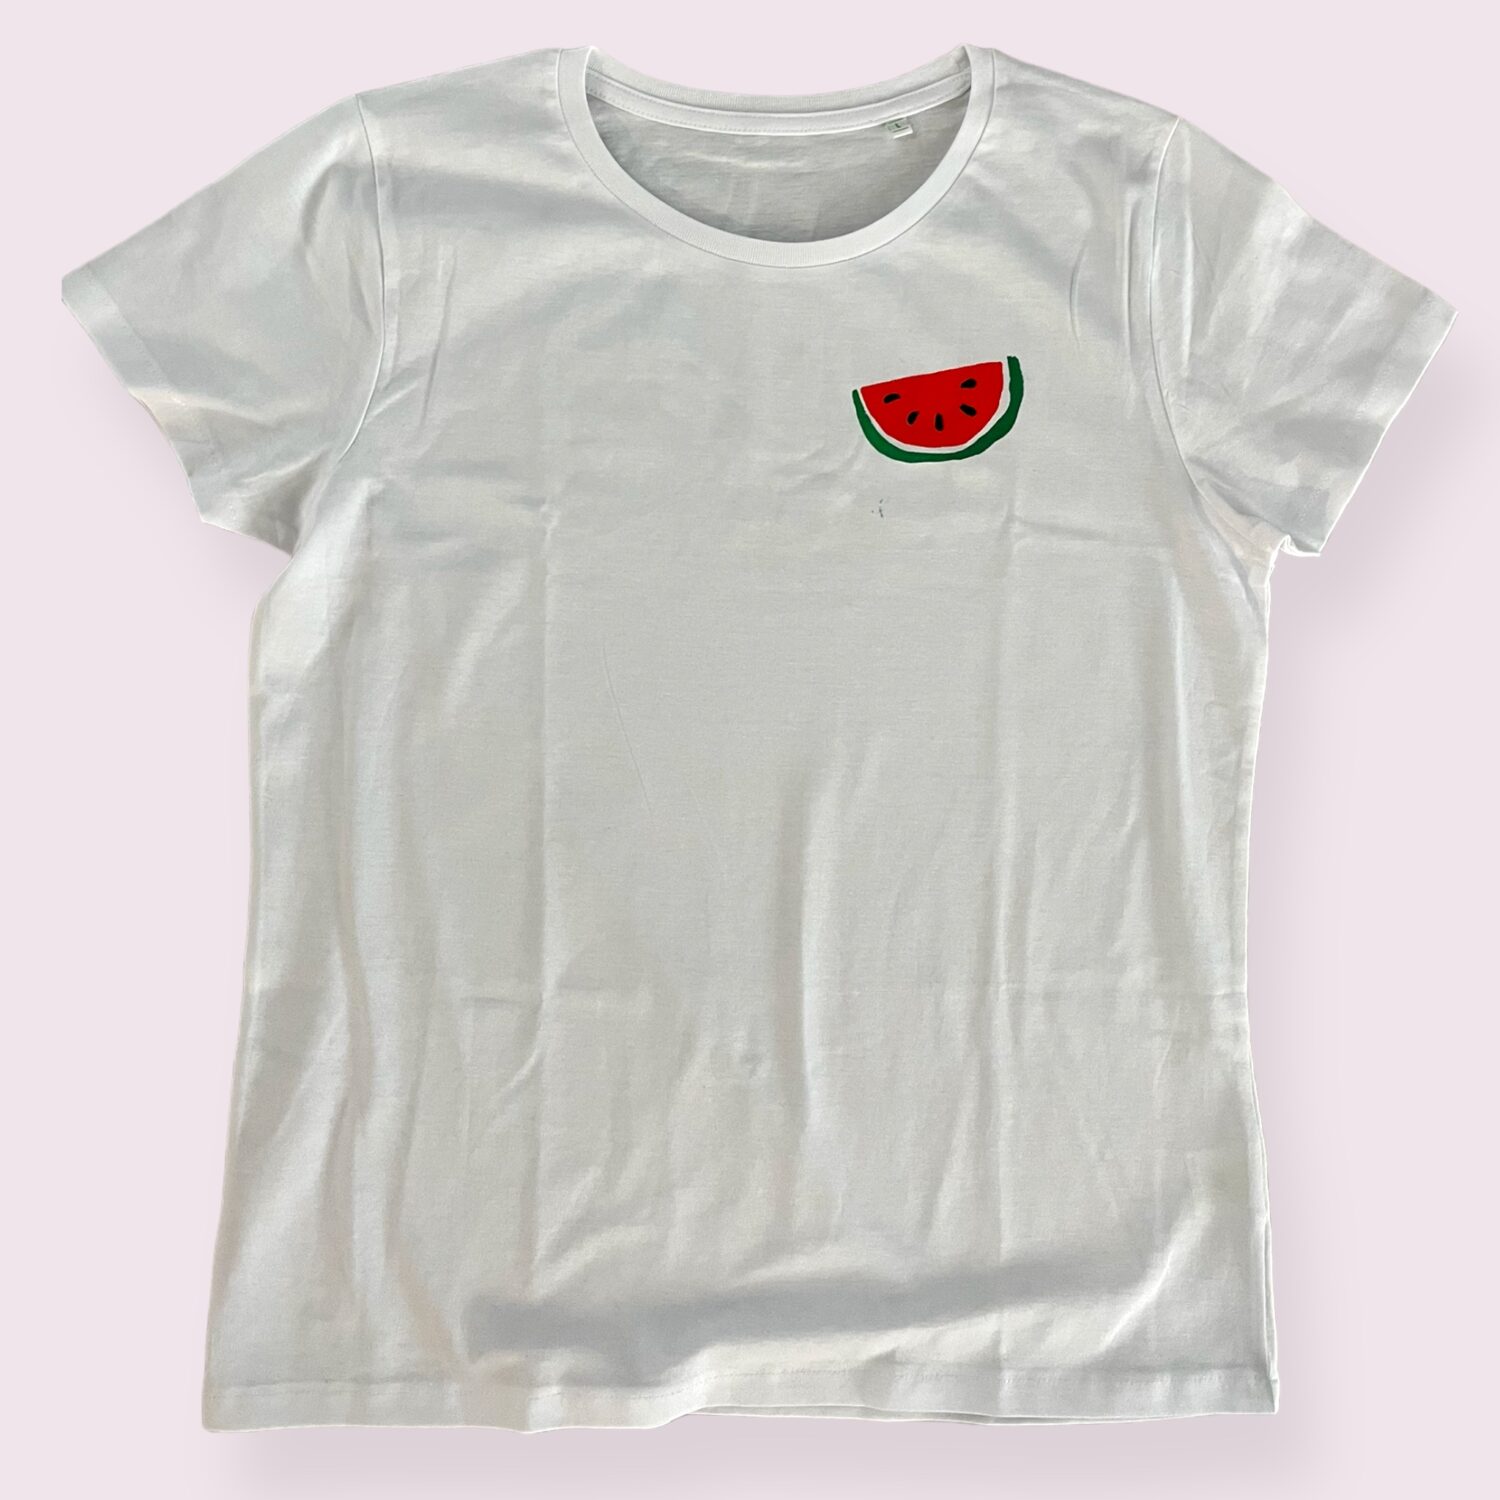 Hvid t-shirt med tryk af vandmelon